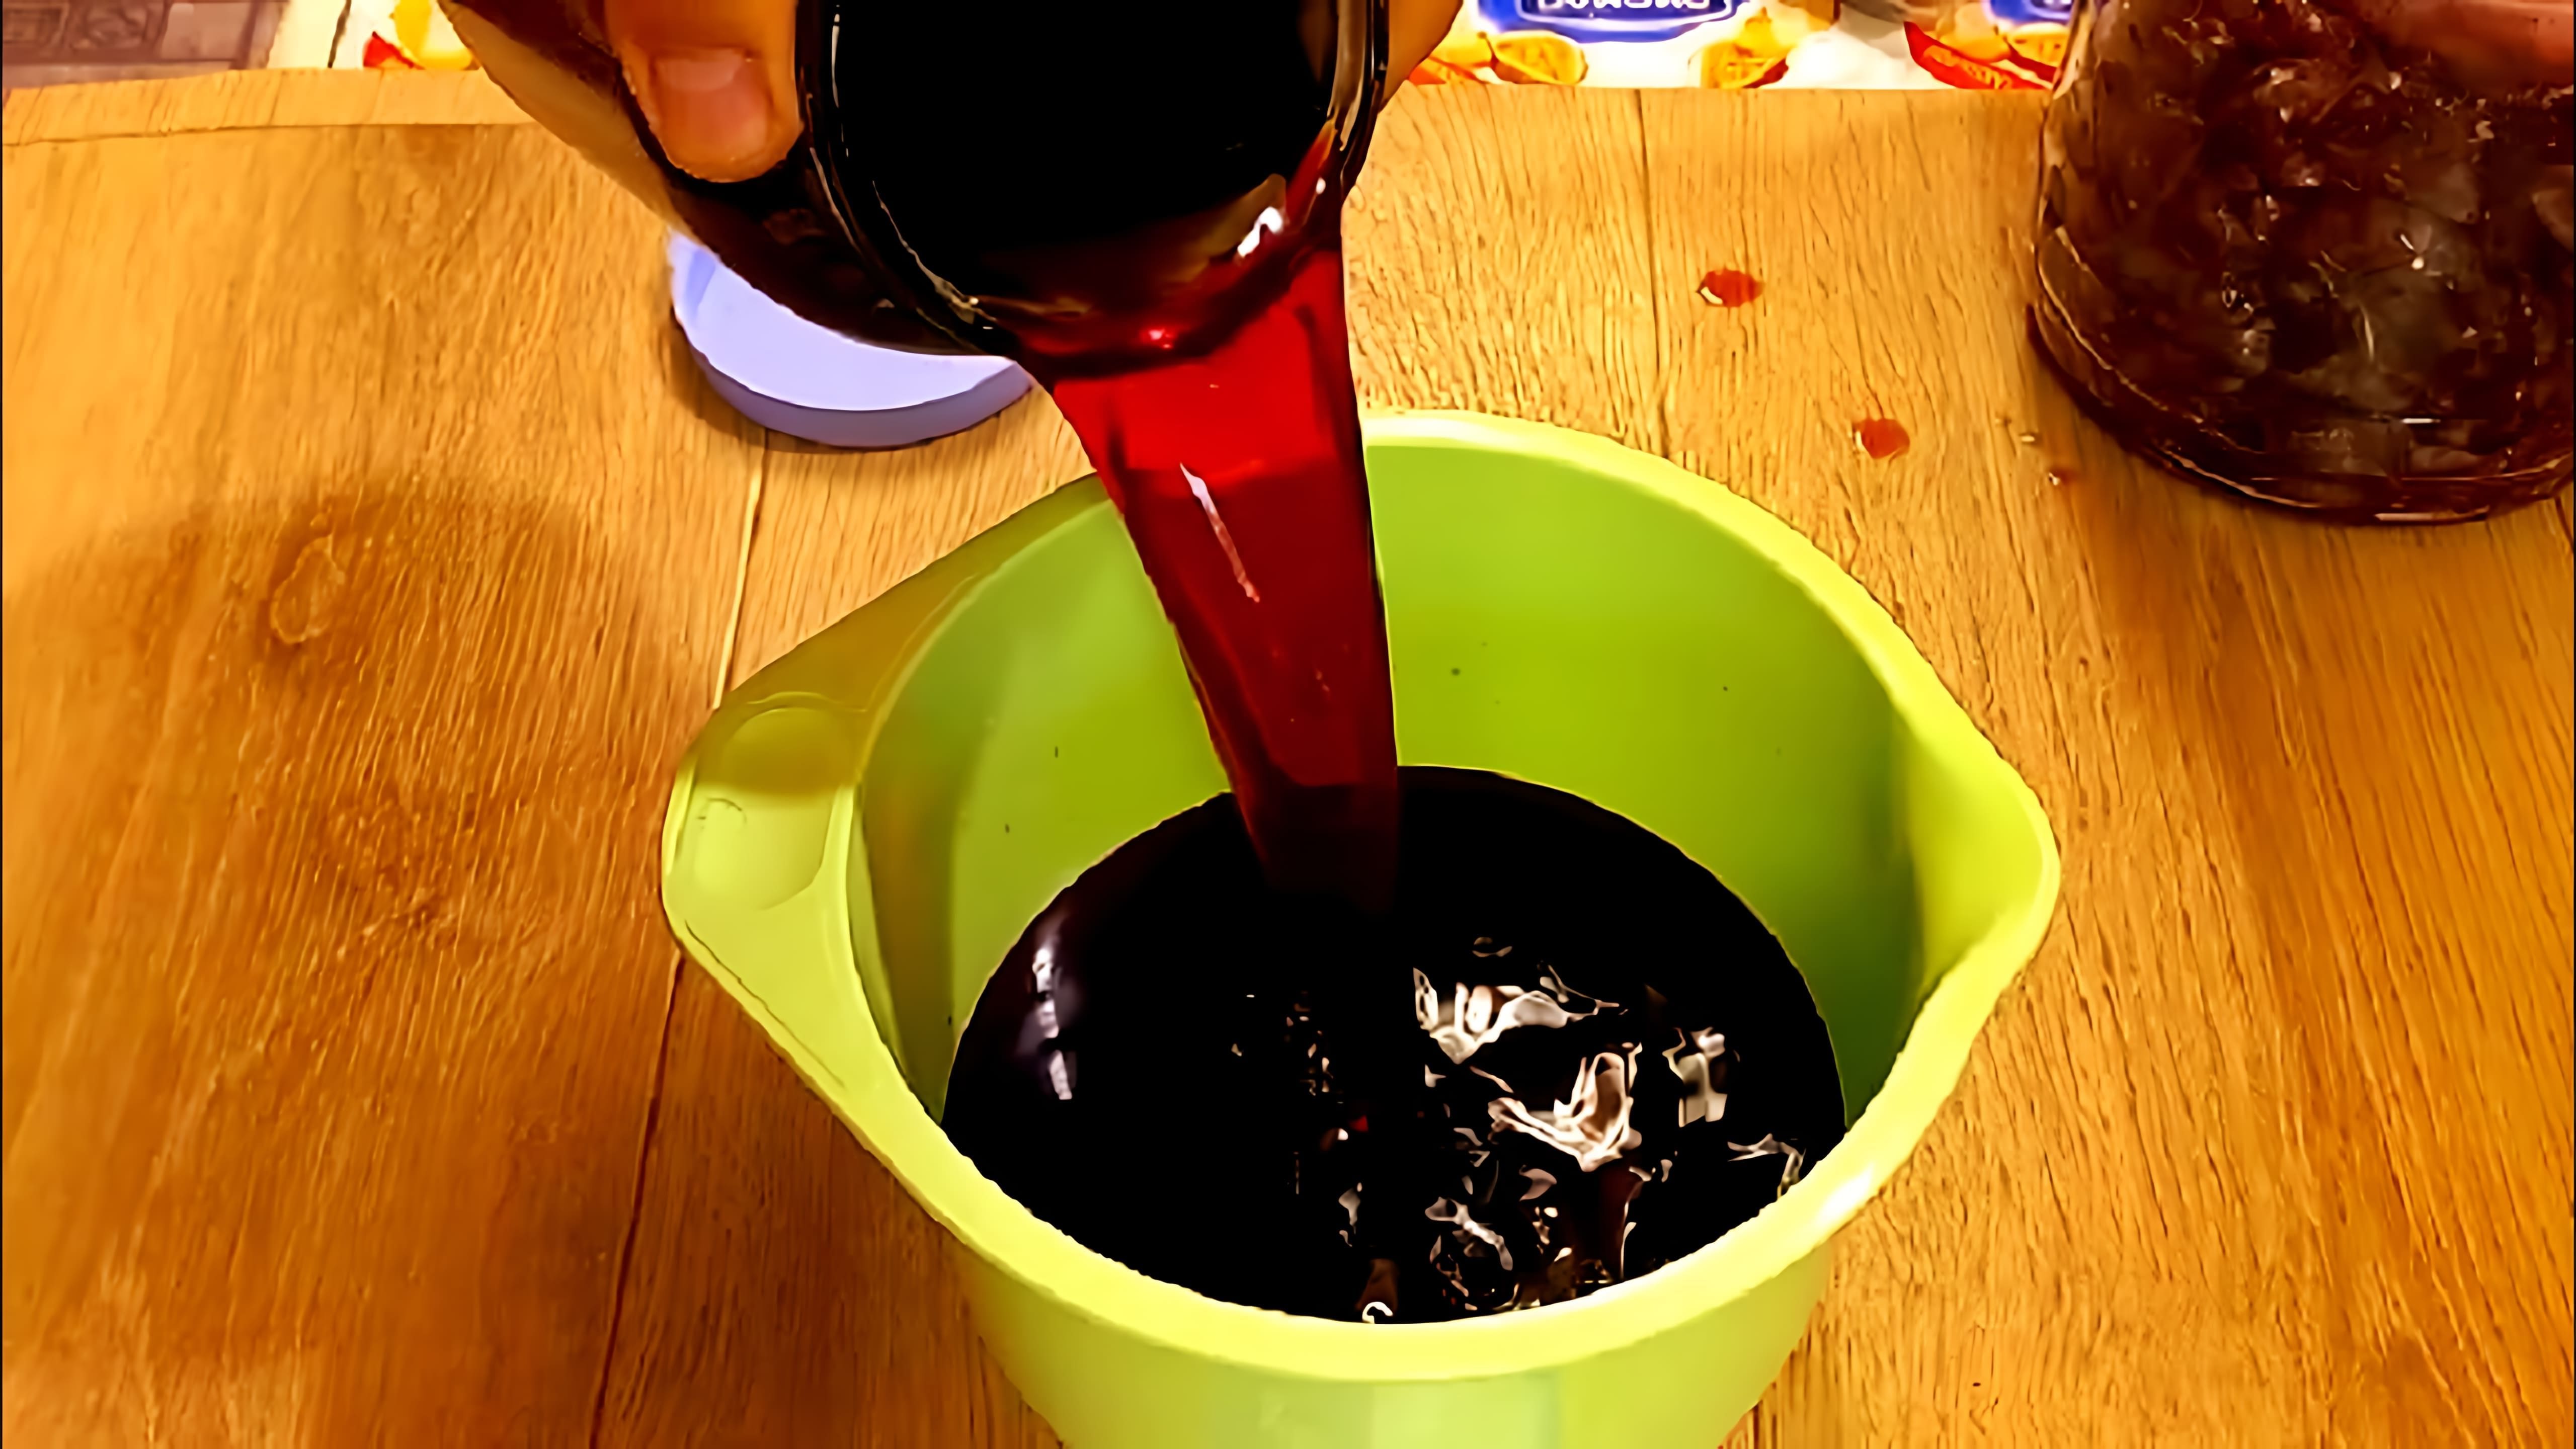 В данном видео демонстрируется процесс приготовления настойки сливы на водке, которую называют "Сливовка"